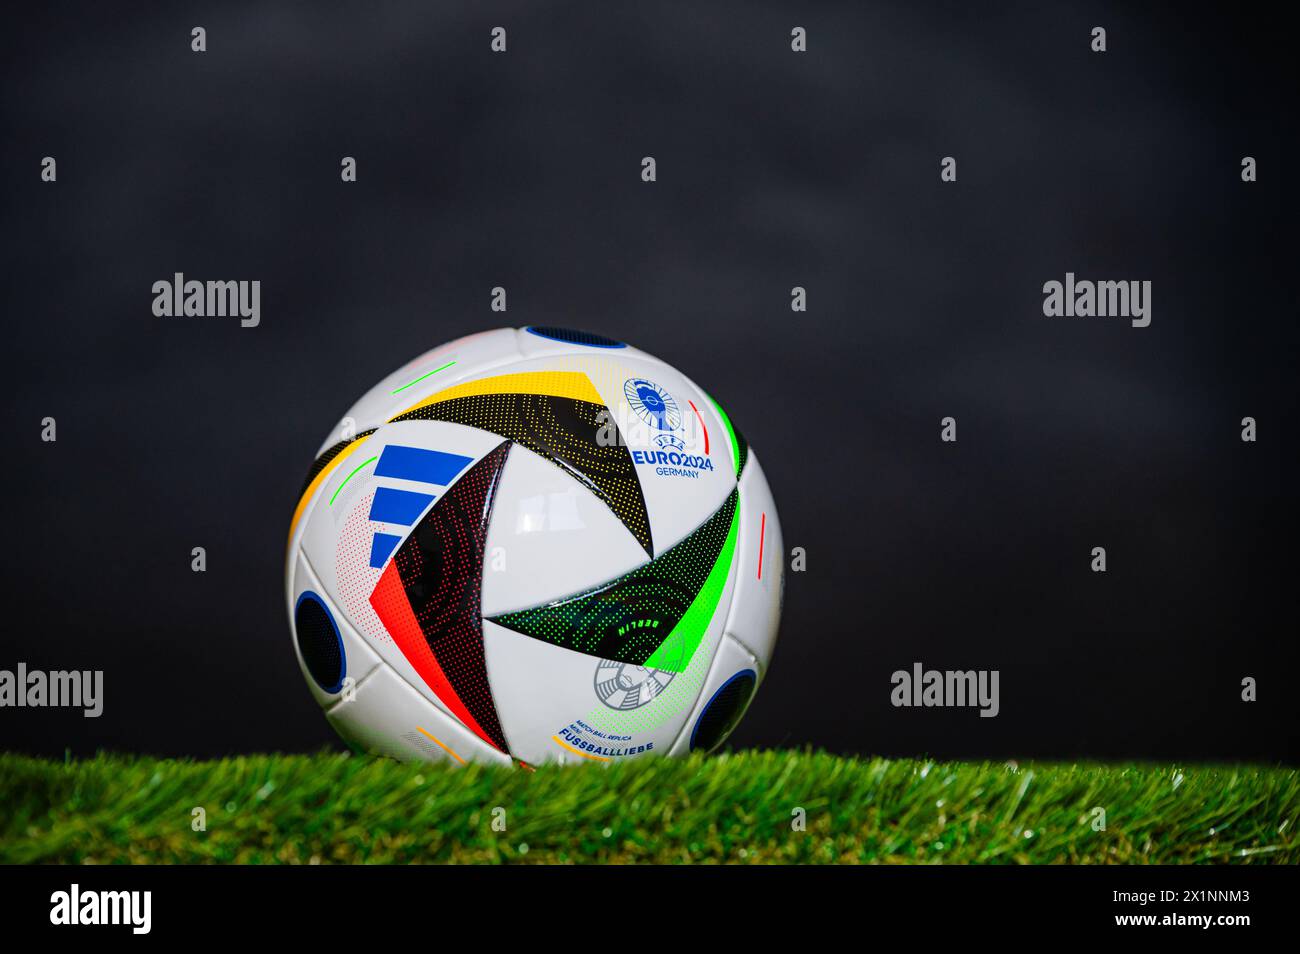 LEIPZIG, 17. APRIL 2024: Offizielle Adidas Fußball-Fussballliebe für die Fußball-Europameisterschaft 2024 auf grünem Gras. Schwarzer Hintergrund Stockfoto